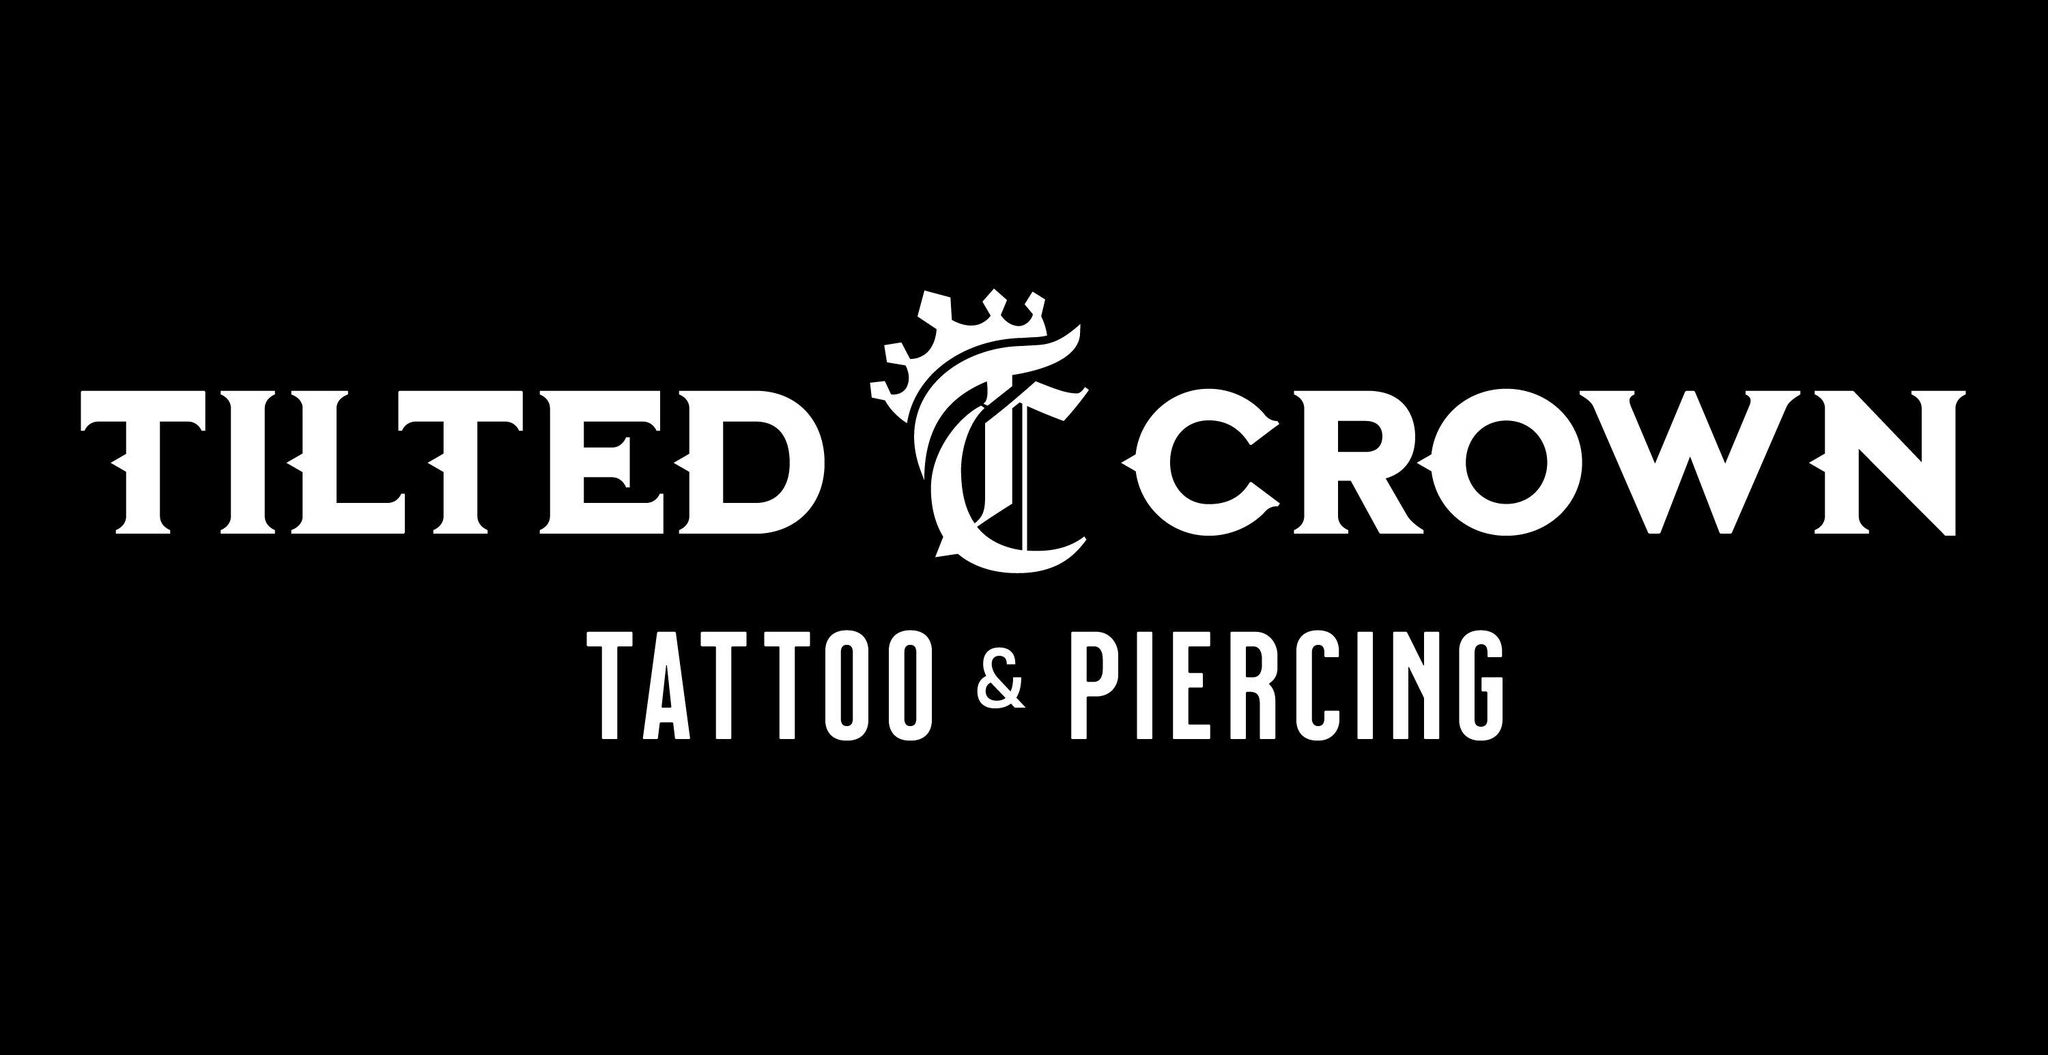 Details 75 tilted crown tattoos  piercings super hot  ineteachers